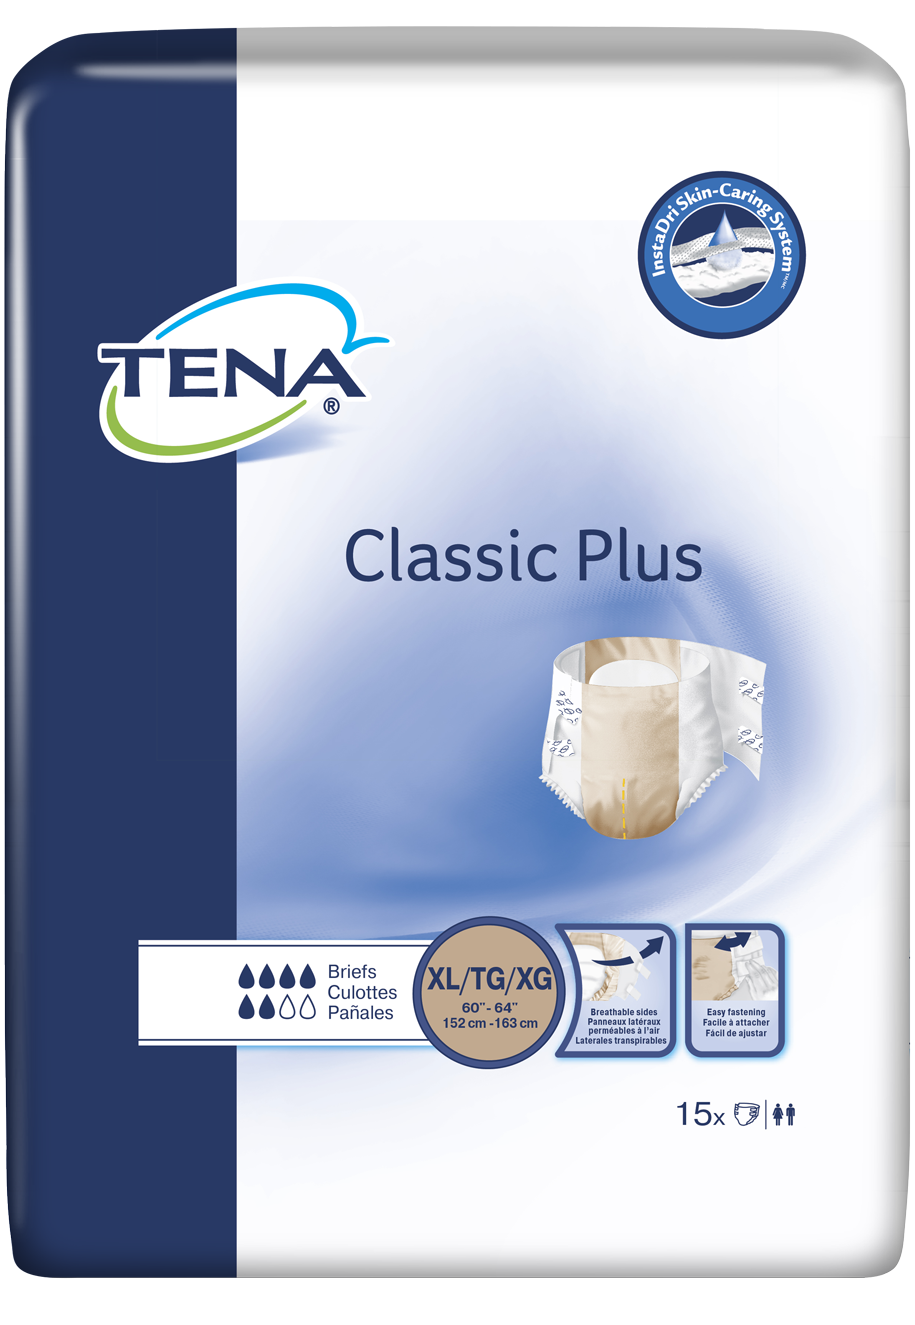 TENA Classic Plus Briefs, X-Large